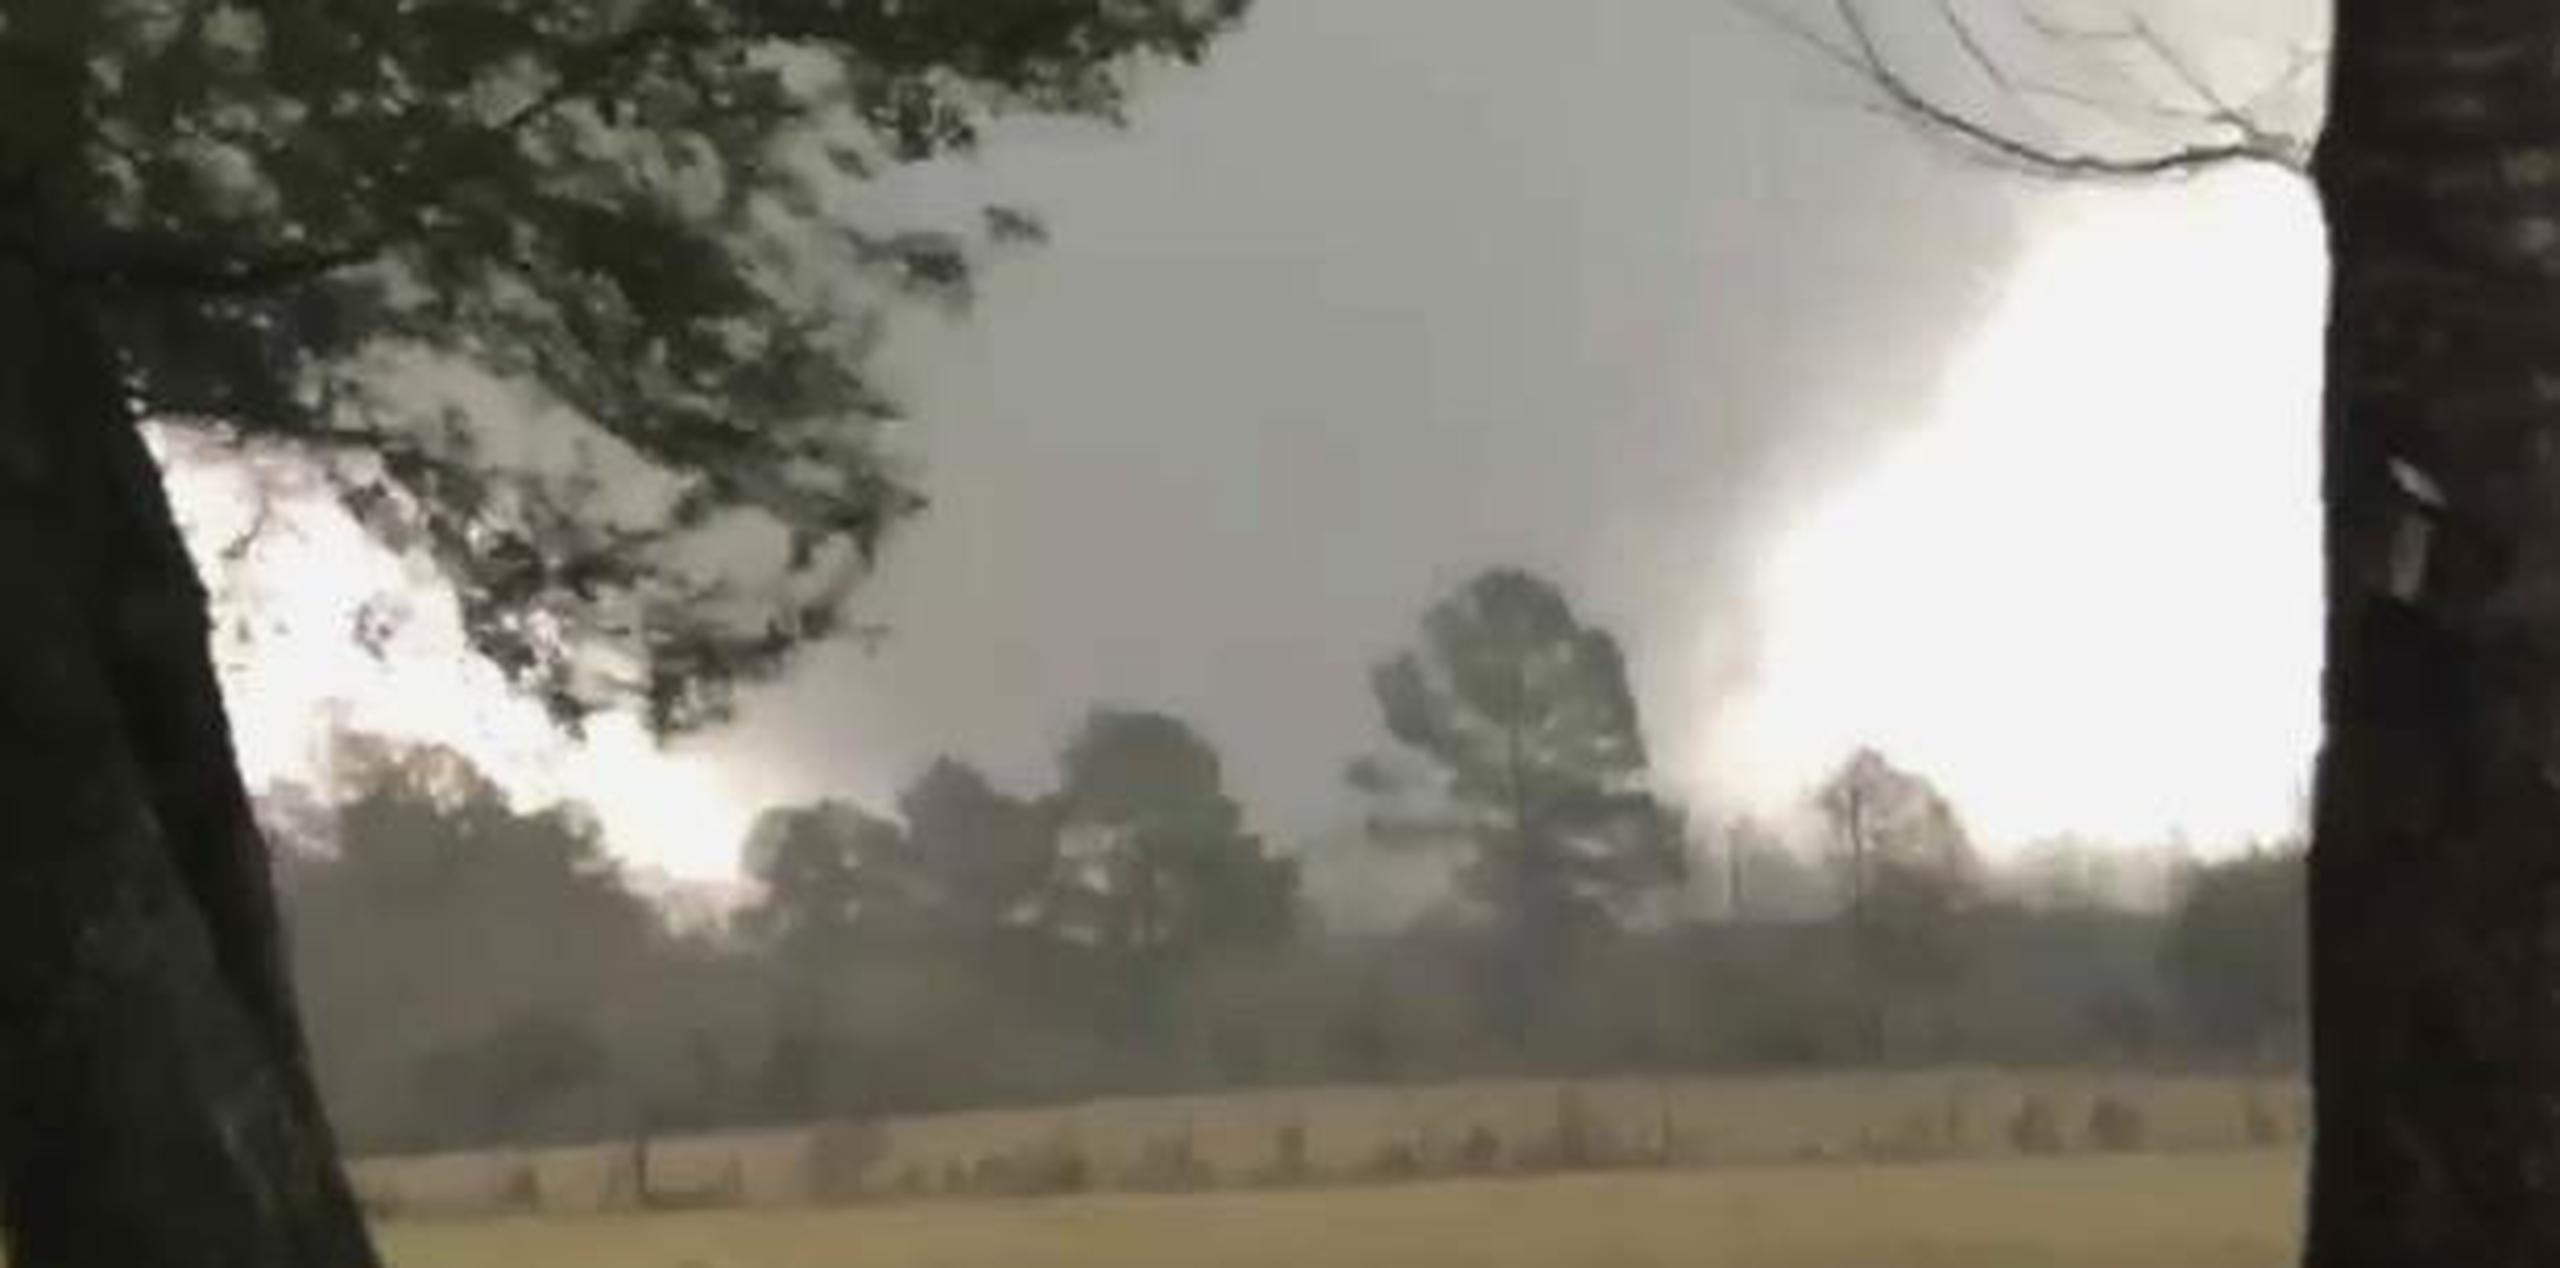 Foto provista por Heather Welch que muestra un tornado ayer en Rosepine, Luisiana. (AP)